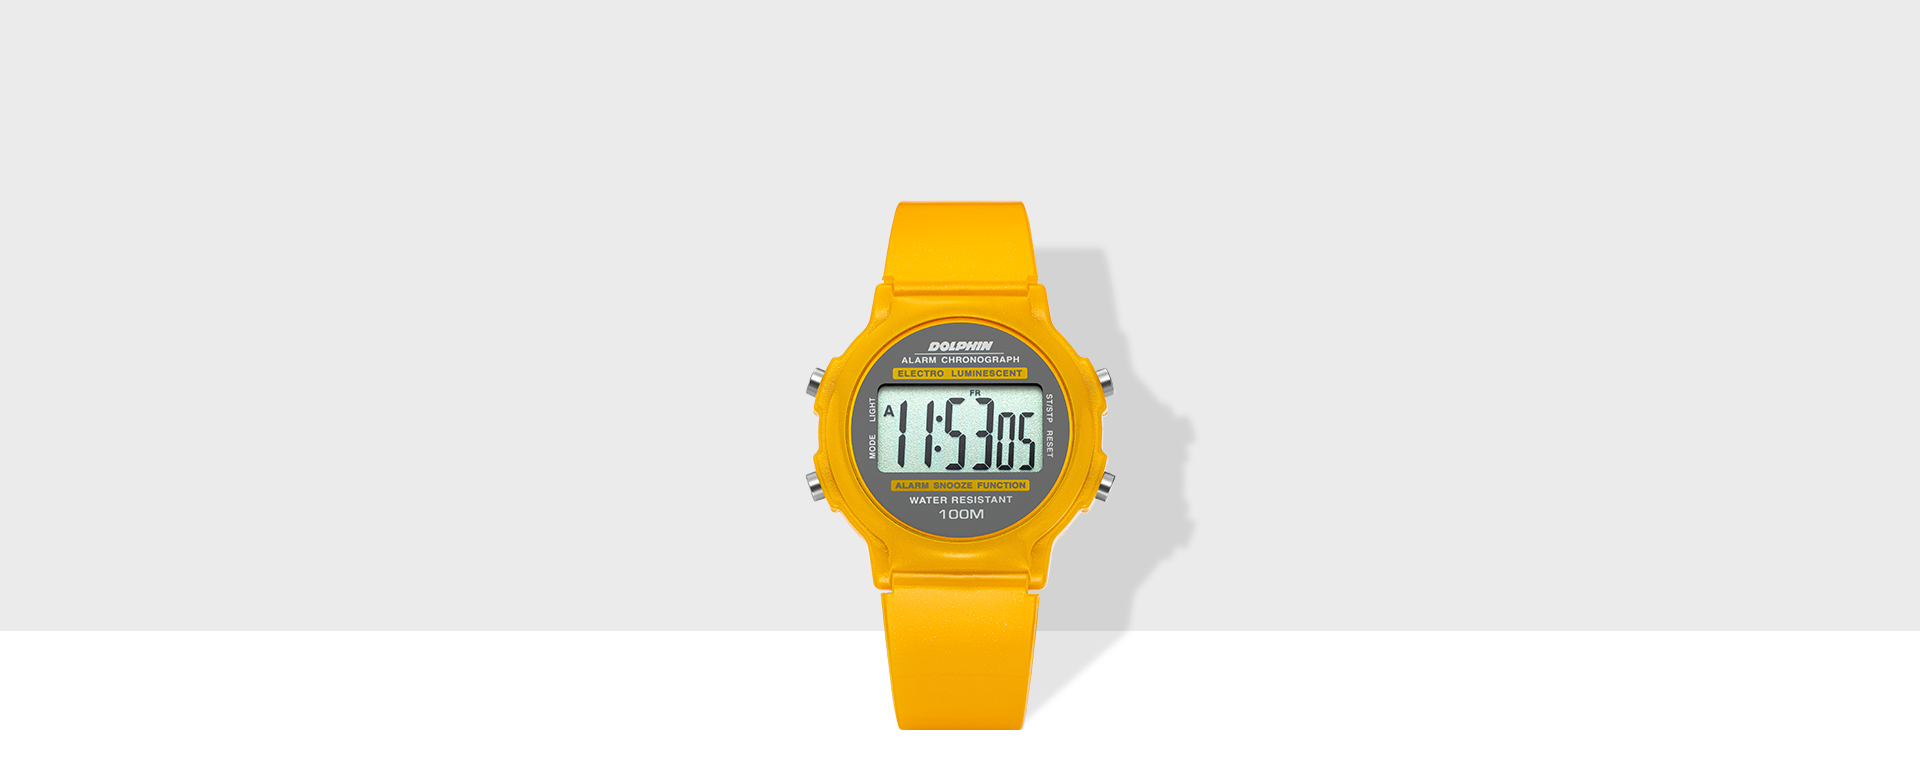 돌핀 레트로 네온 디지털 손목시계 옐로우